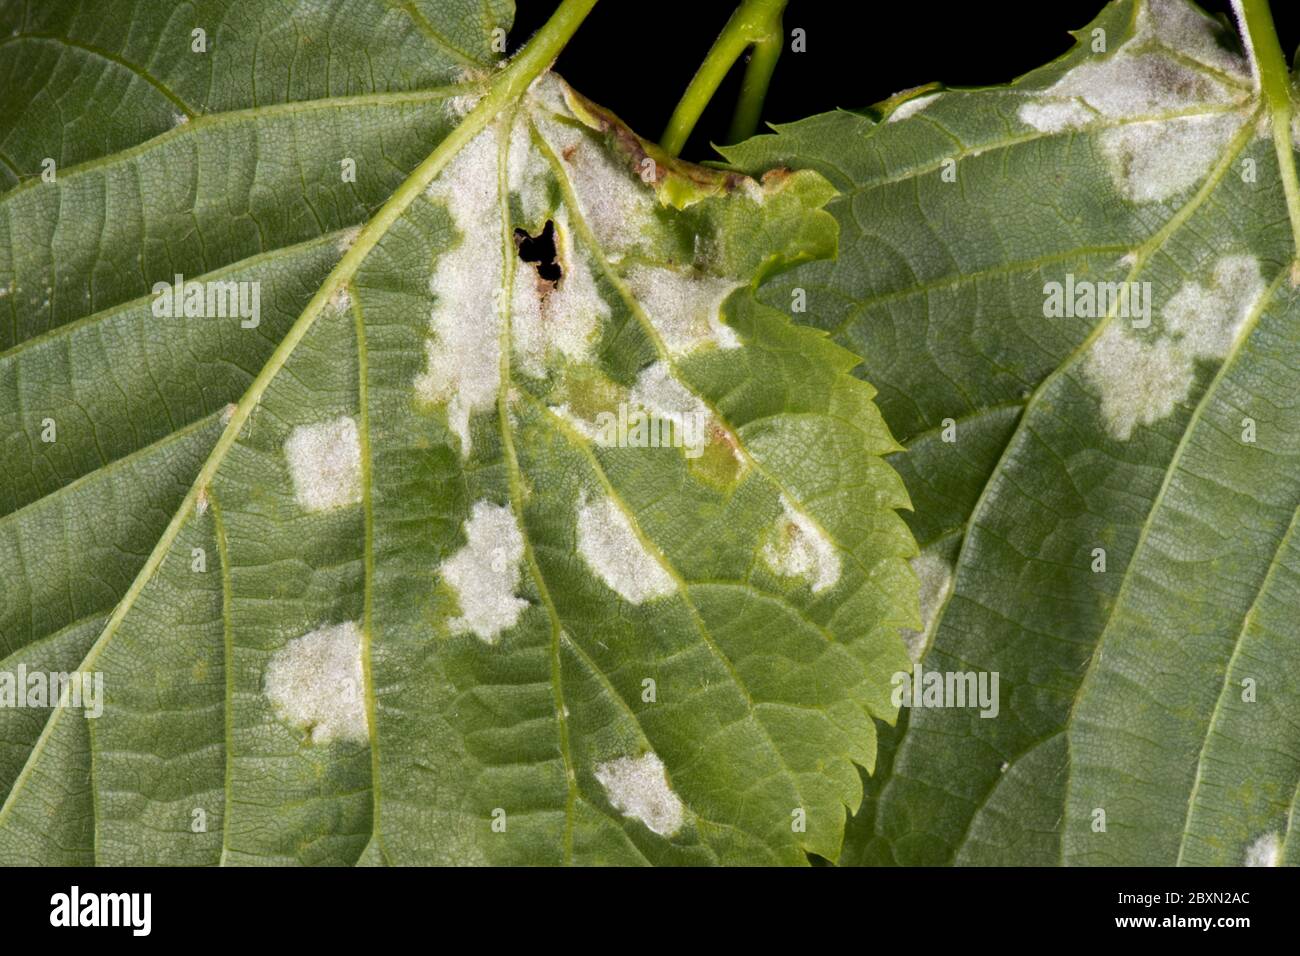 Cloques blanches d'acariens de la Galle feutrine de chaux (Eriophytes leiosoma) sur la surface inférieure des jeunes feuilles de chaux feuilletée (Tilia cordata) Banque D'Images